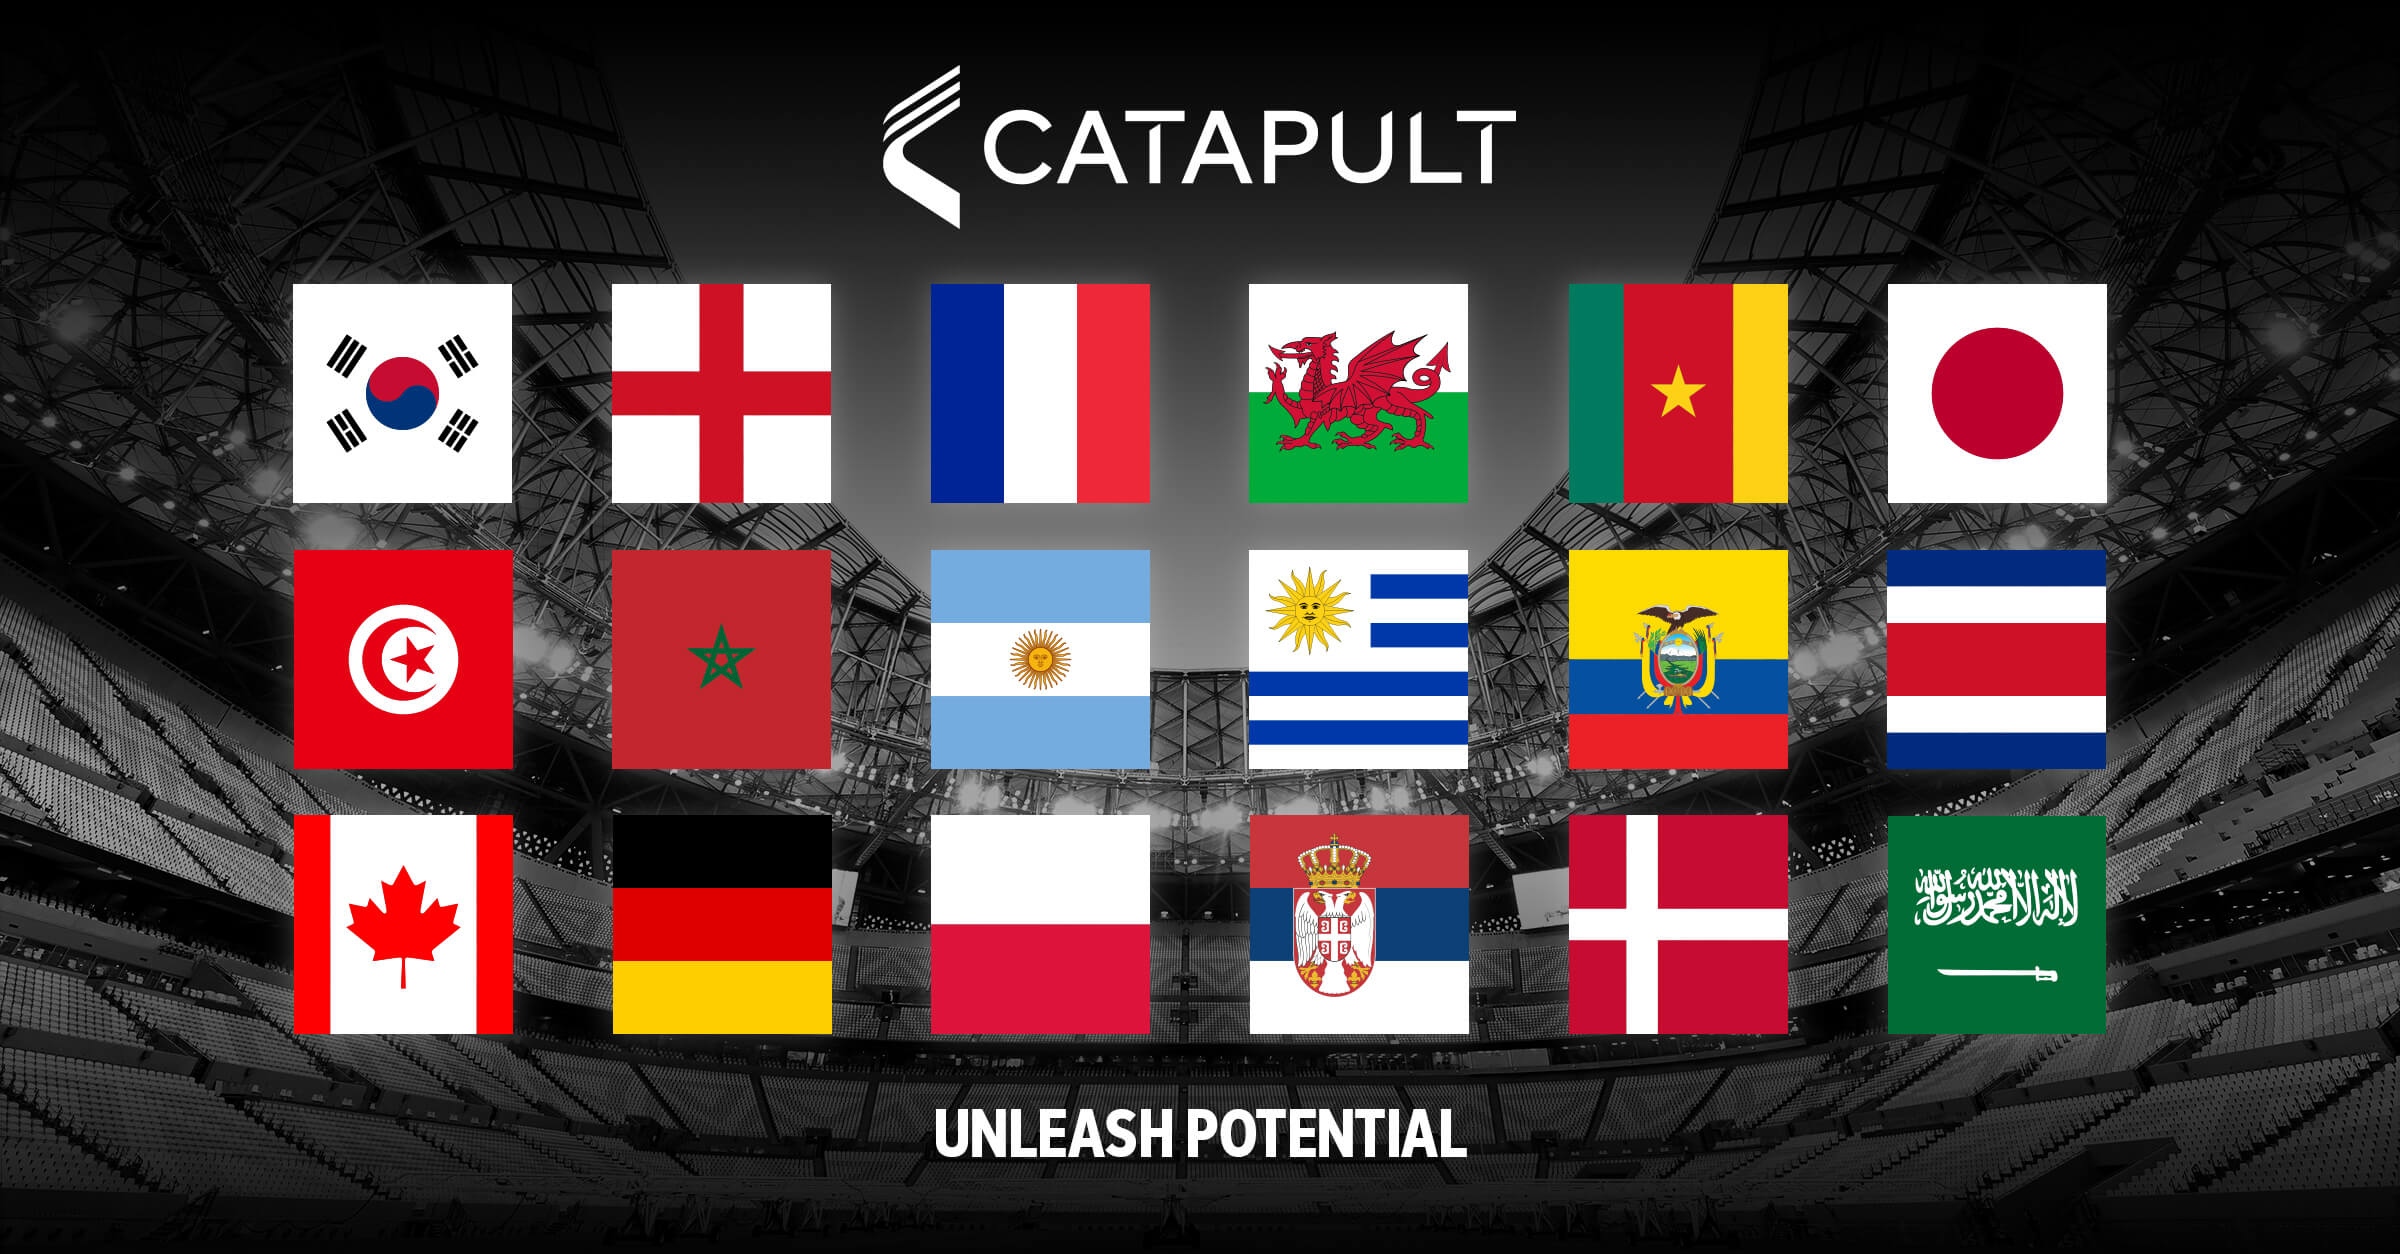 Equipes catapultas na Copa do Mundo FIFA 2022 no Catar